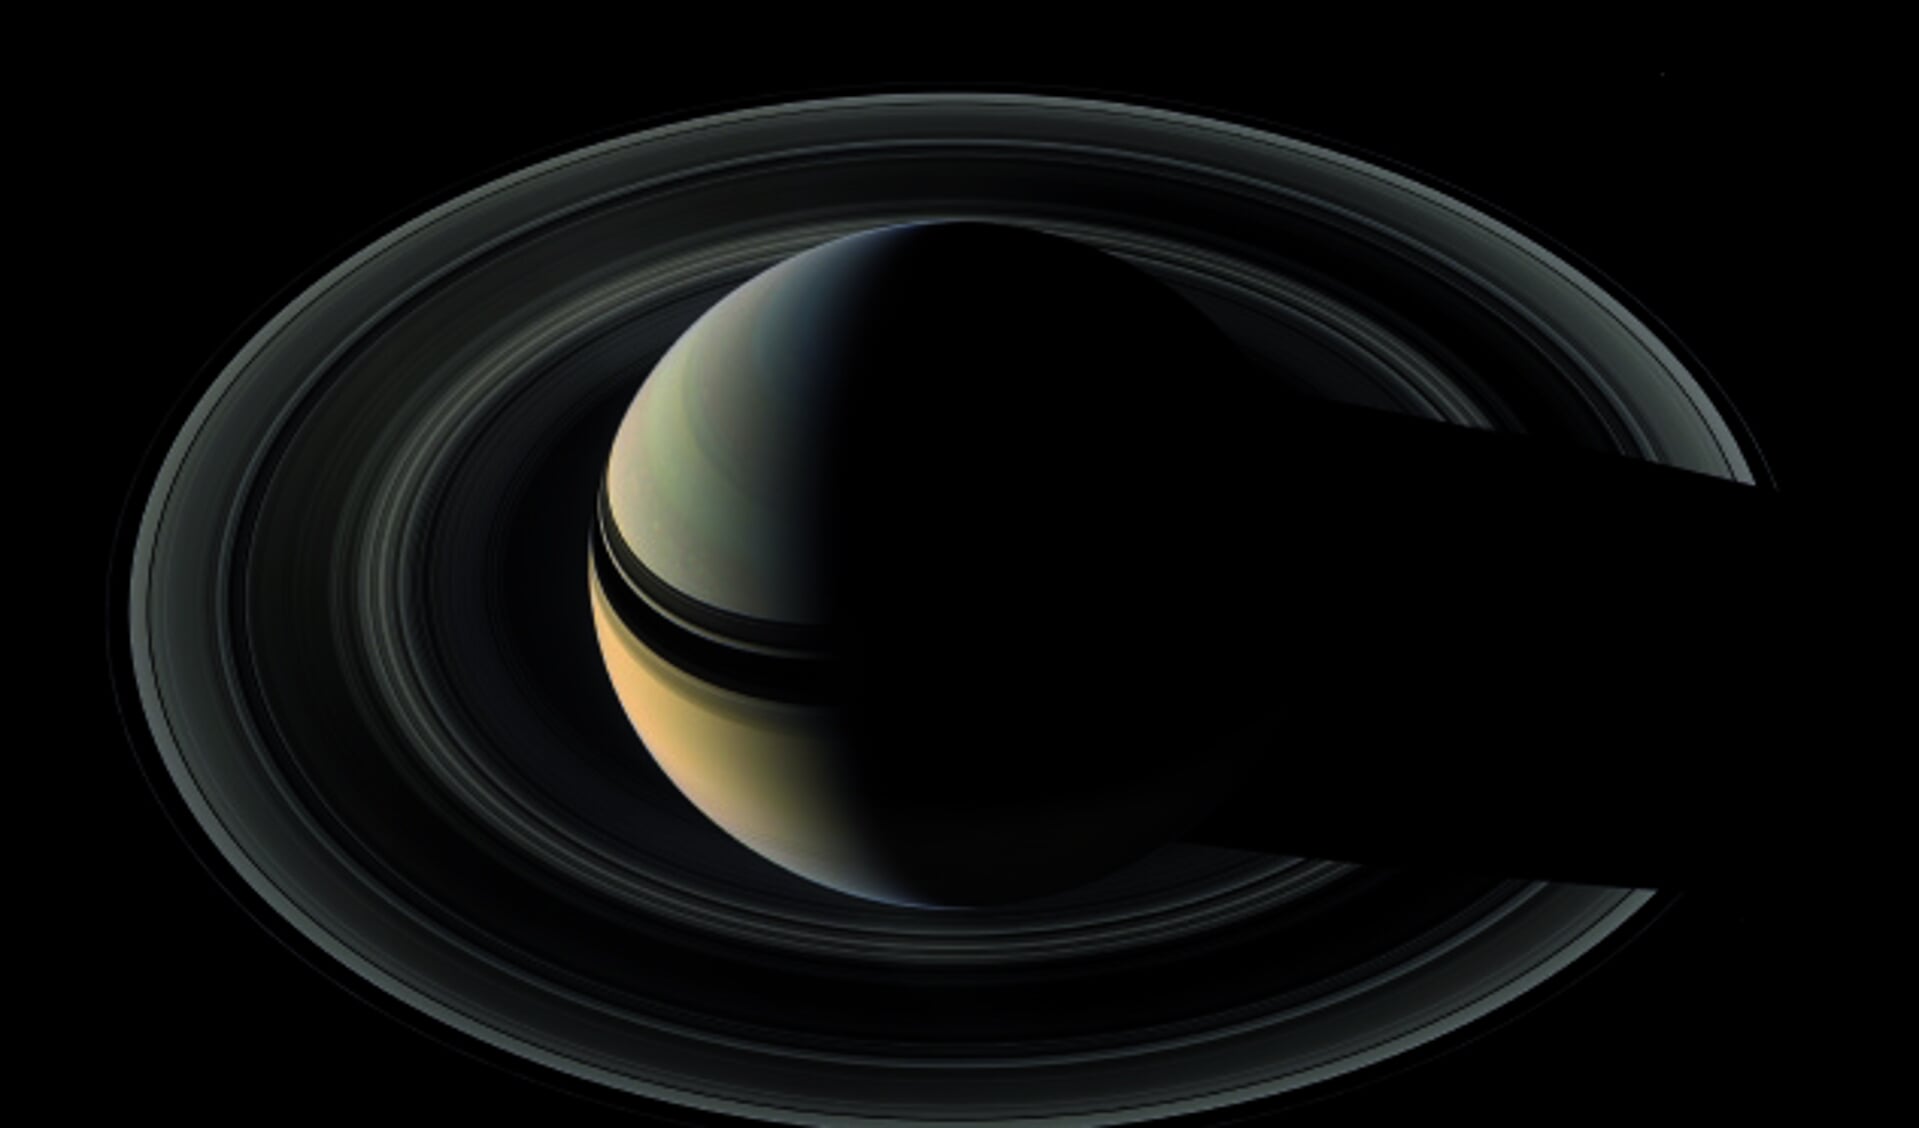 De majestueze ringen van Saturnus waren eeuwenlang een mysterie: waaruit bestaan ze, hoe oud zijn ze, hoe kunnen ze blijven bestaan?